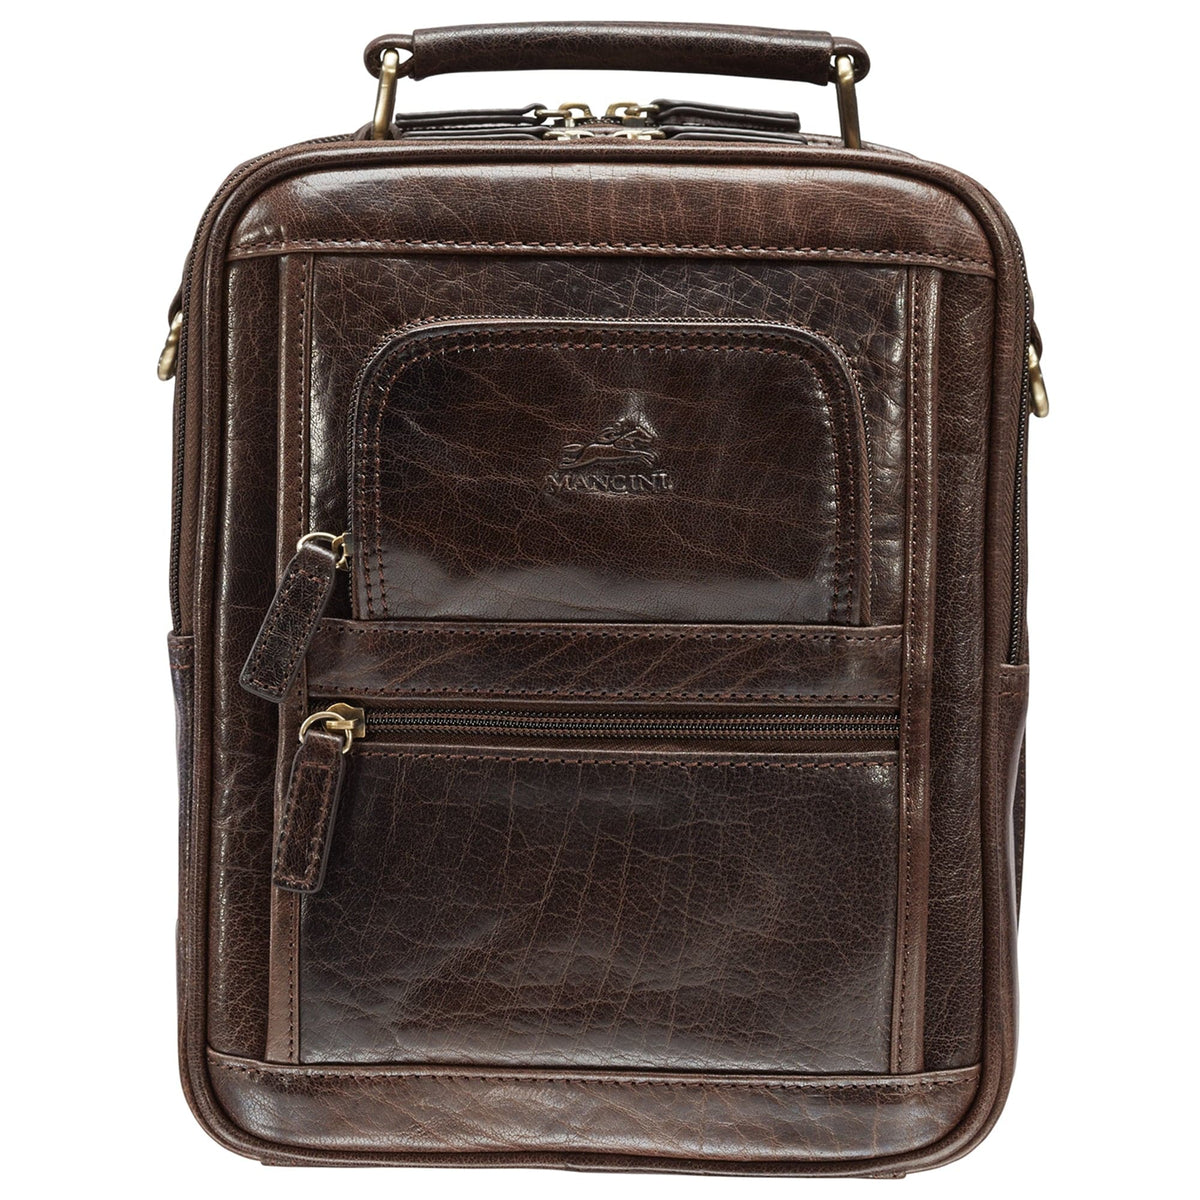 Mancini Arizona Large Unisex Bag with Zippered Rear Organizer